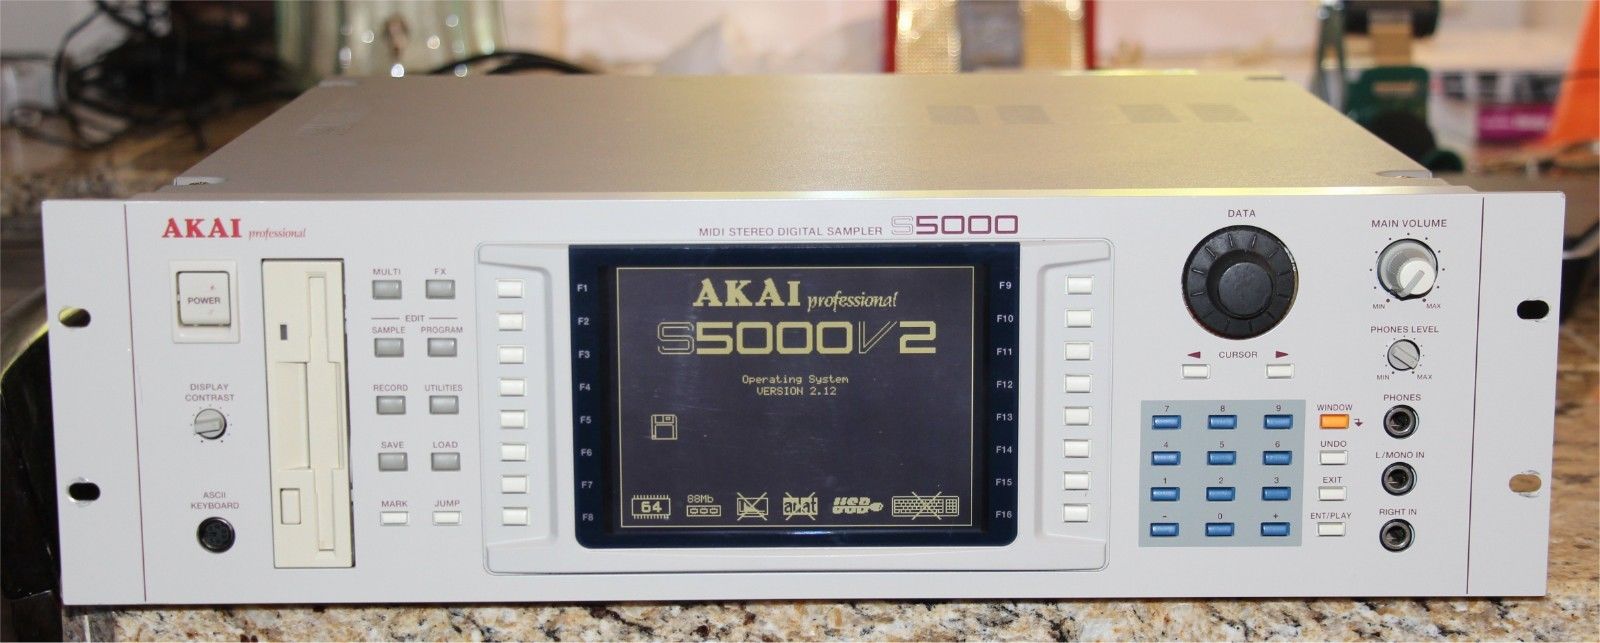 Akai S5000 Sampler -  88mb Ram, 64 Voice, 16 Bit, USB Upgrade